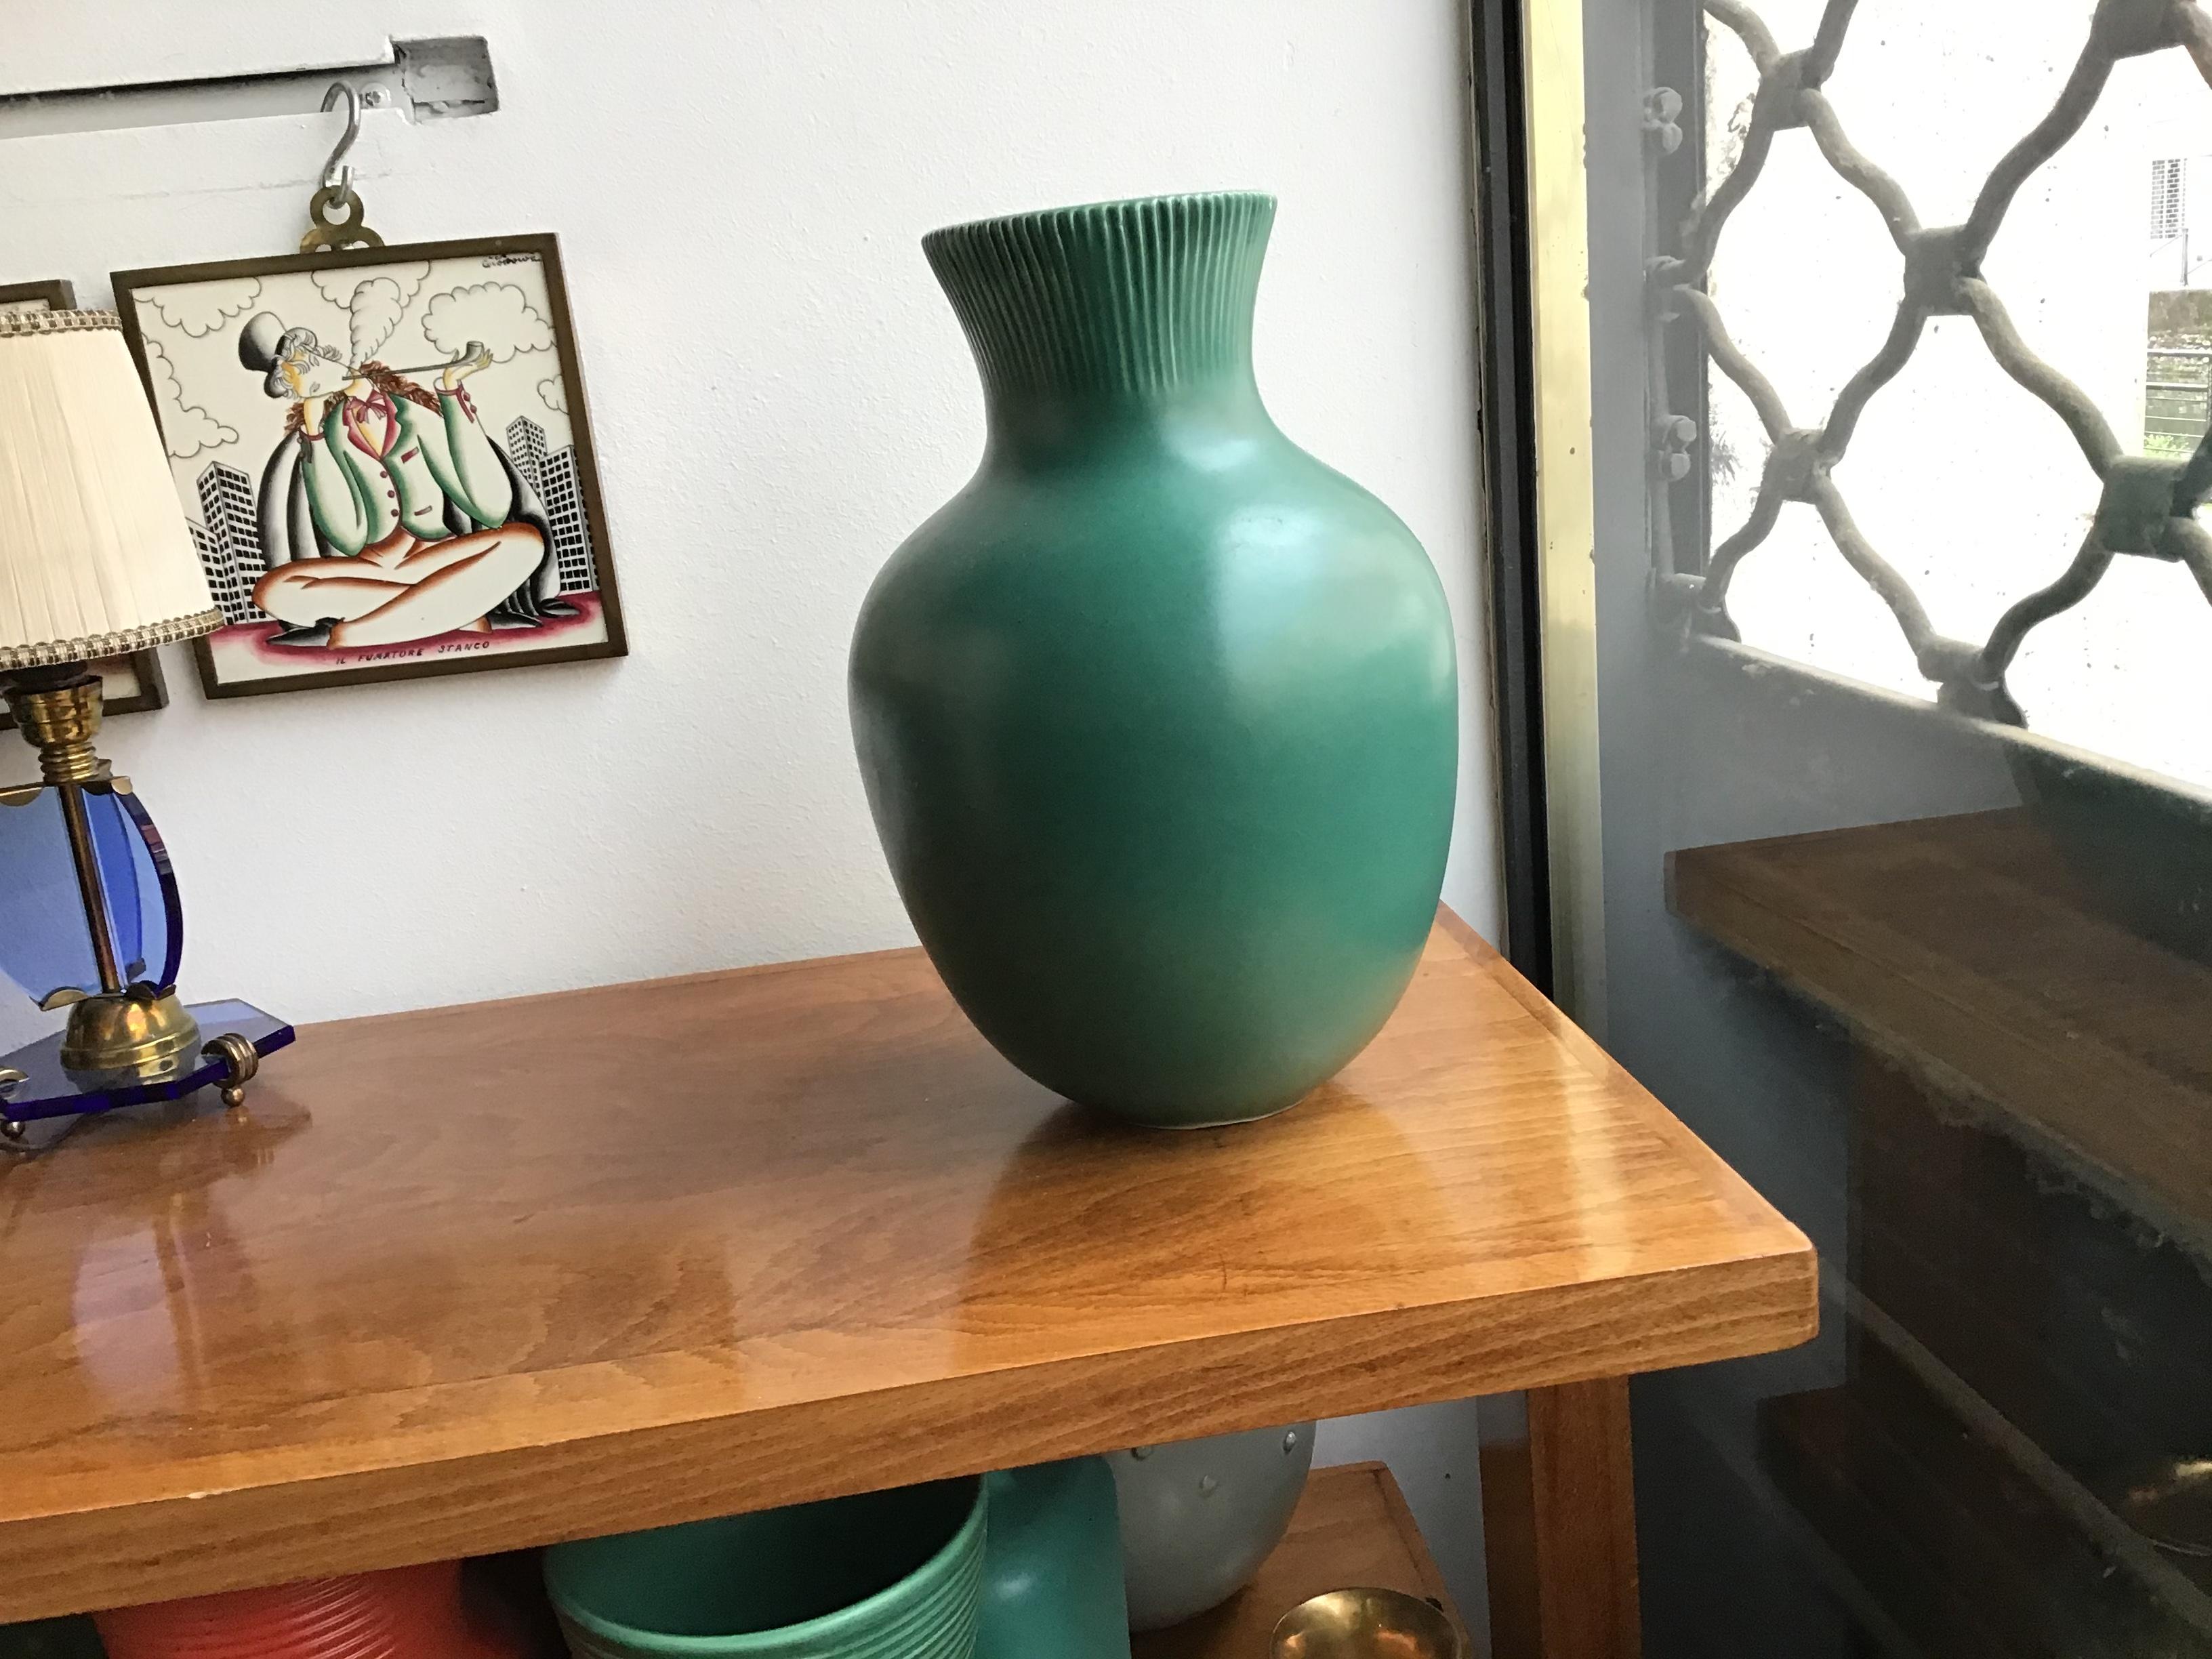 Richard Ginori Giovanni Gariboldi vase green ceramic 1950 Italy.